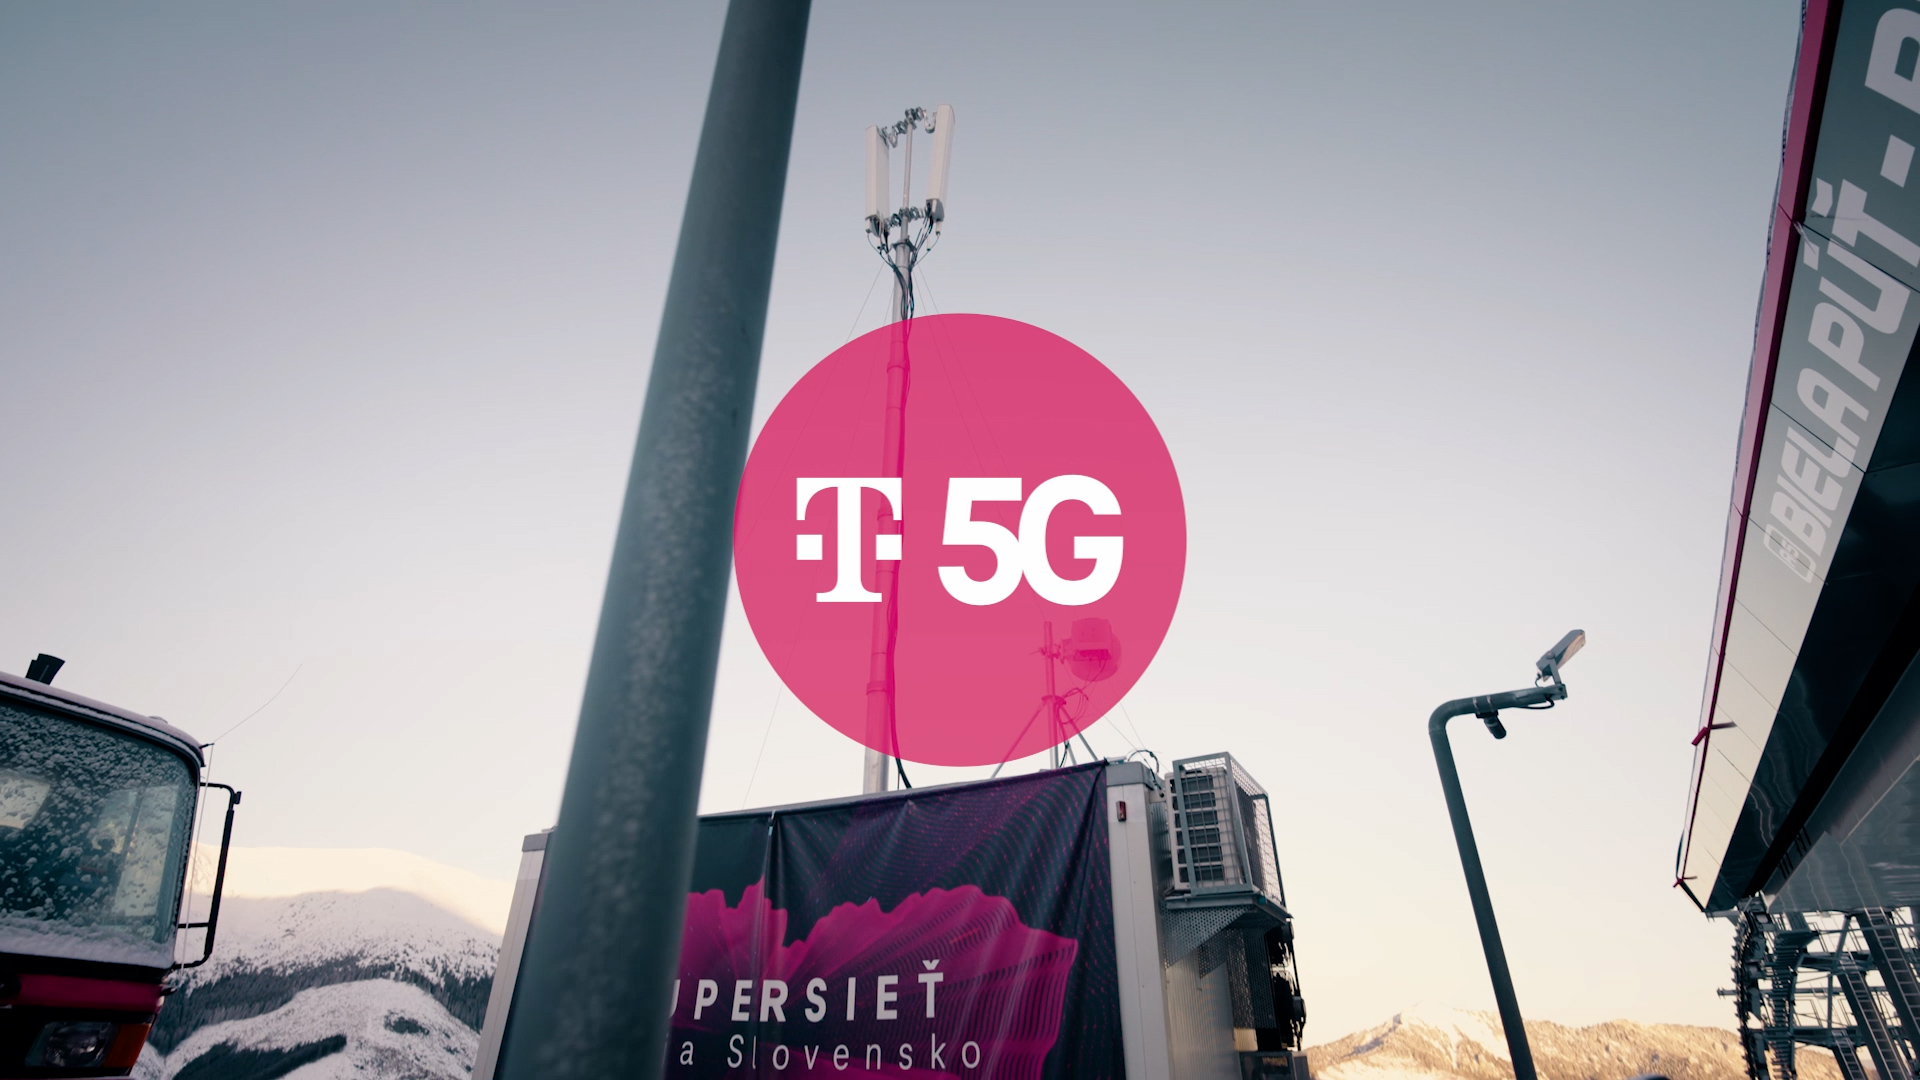 Telekom priniesol do Jasnej 5G sieŤ